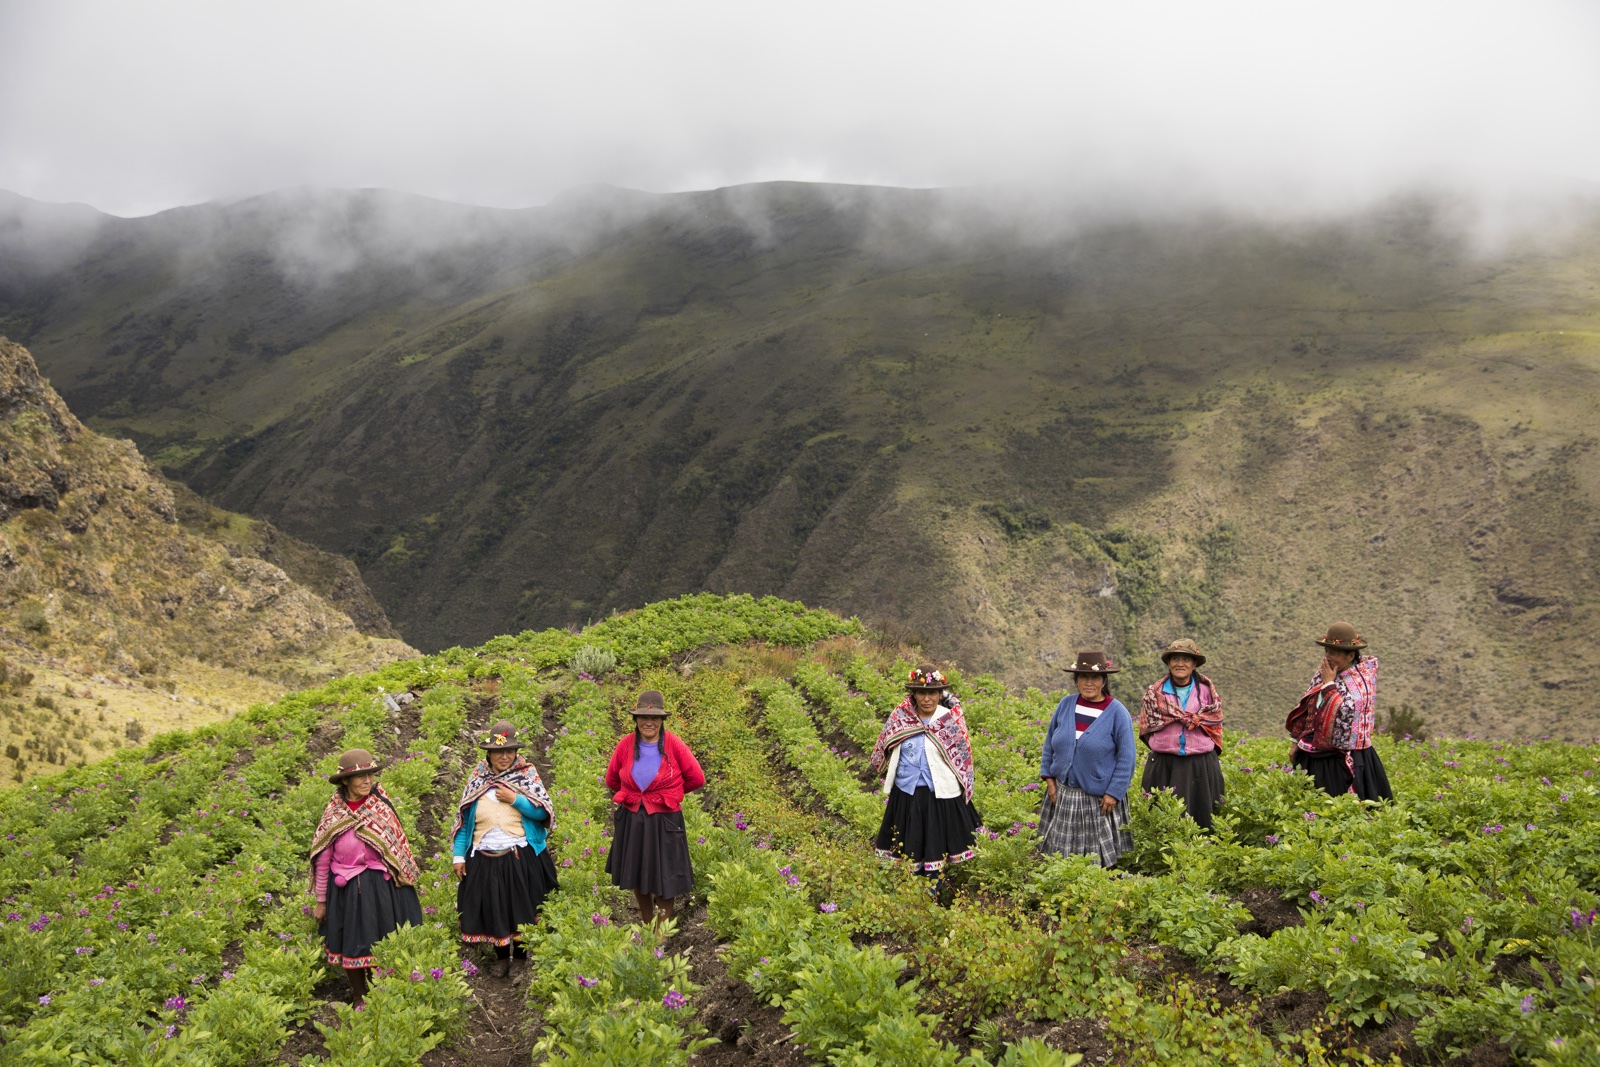 Oxfam Novib Seeds Peru vrouwen op aardappelveld